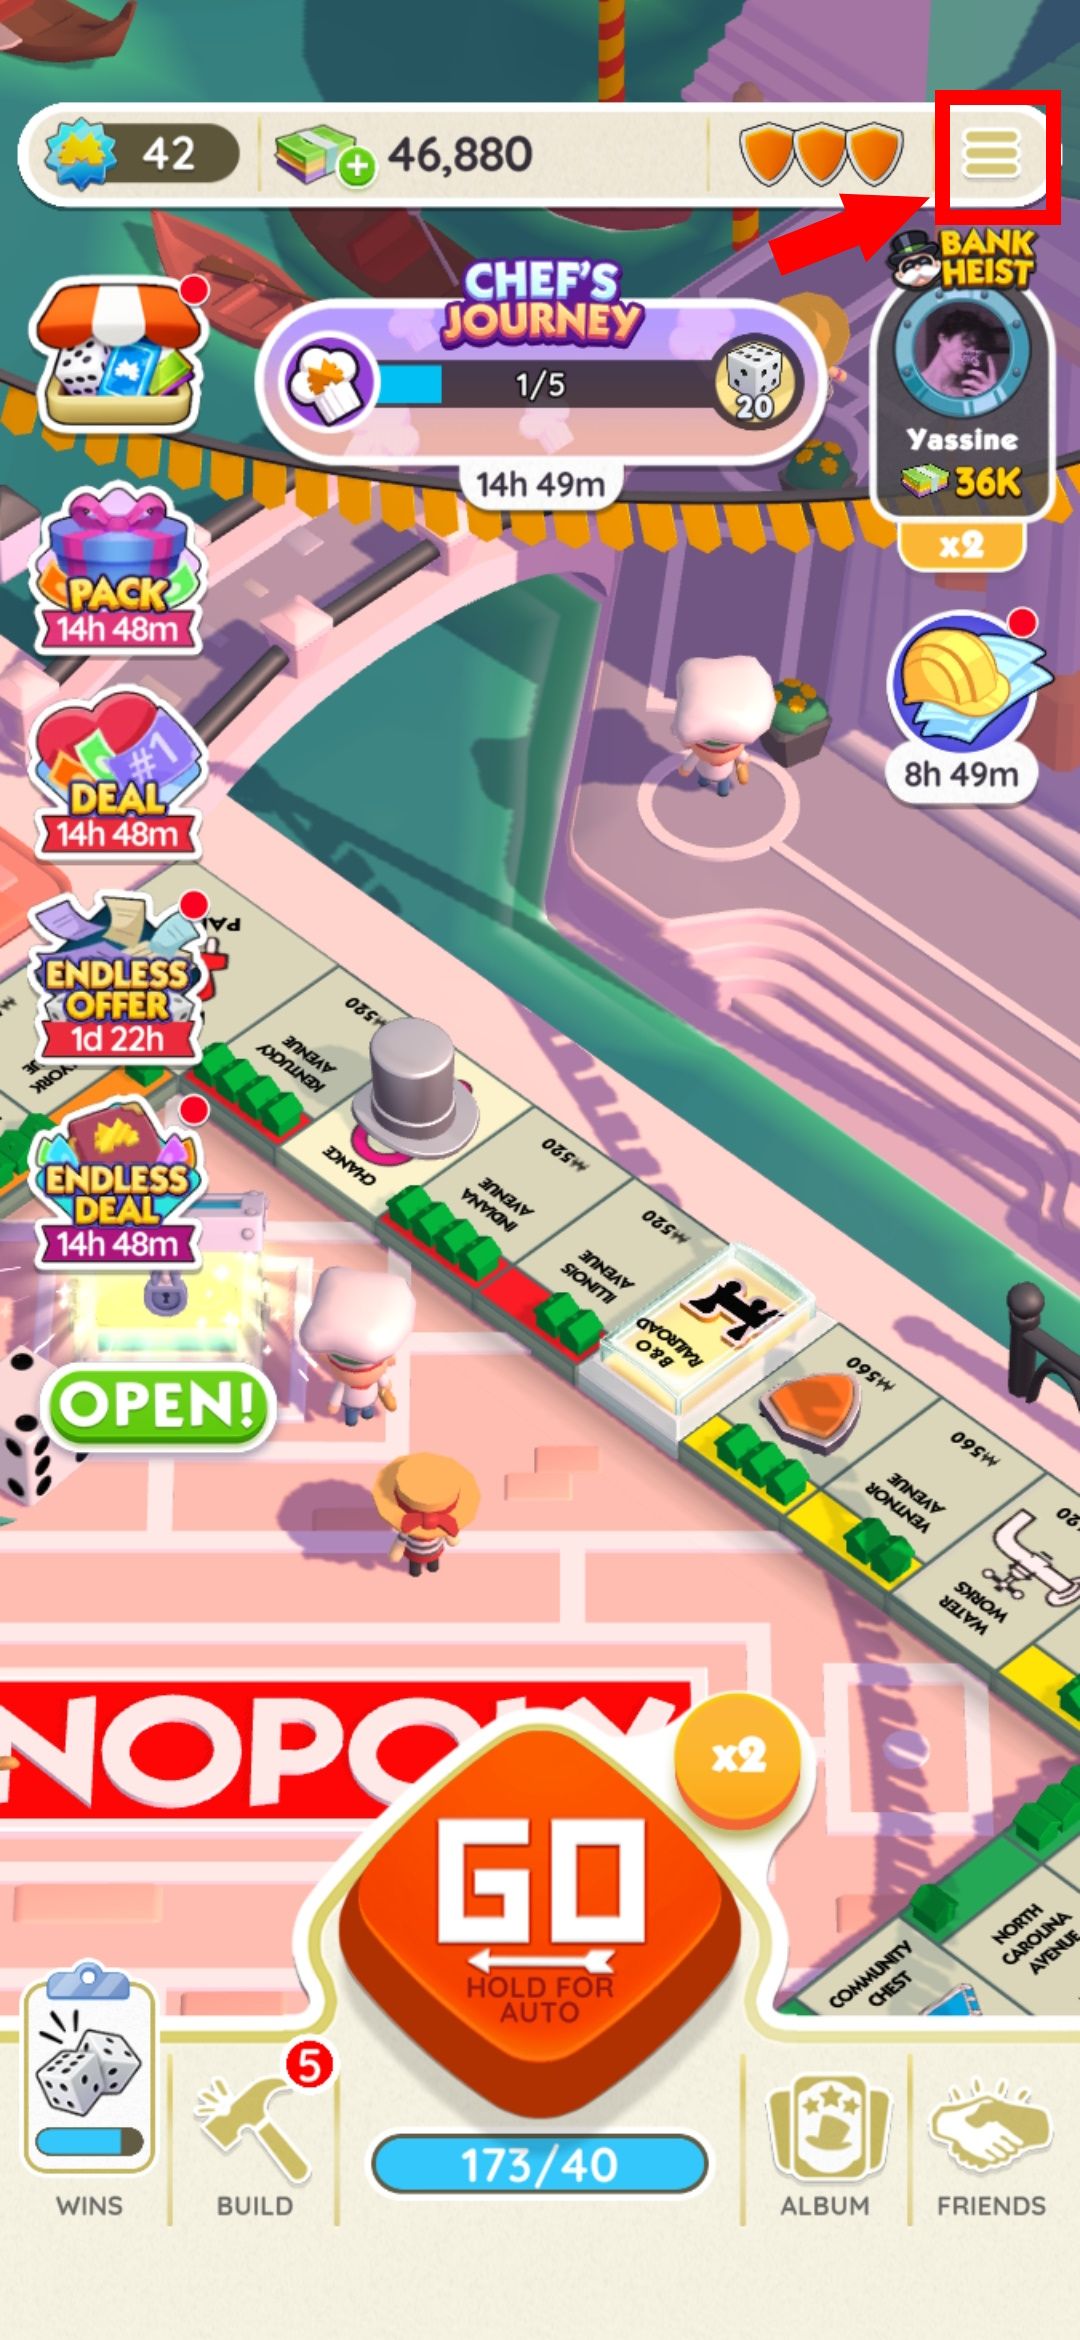 seta sólida vermelha aponta para o contorno do retângulo vermelho sobre o botão de hambúrguer no aplicativo monopoly go